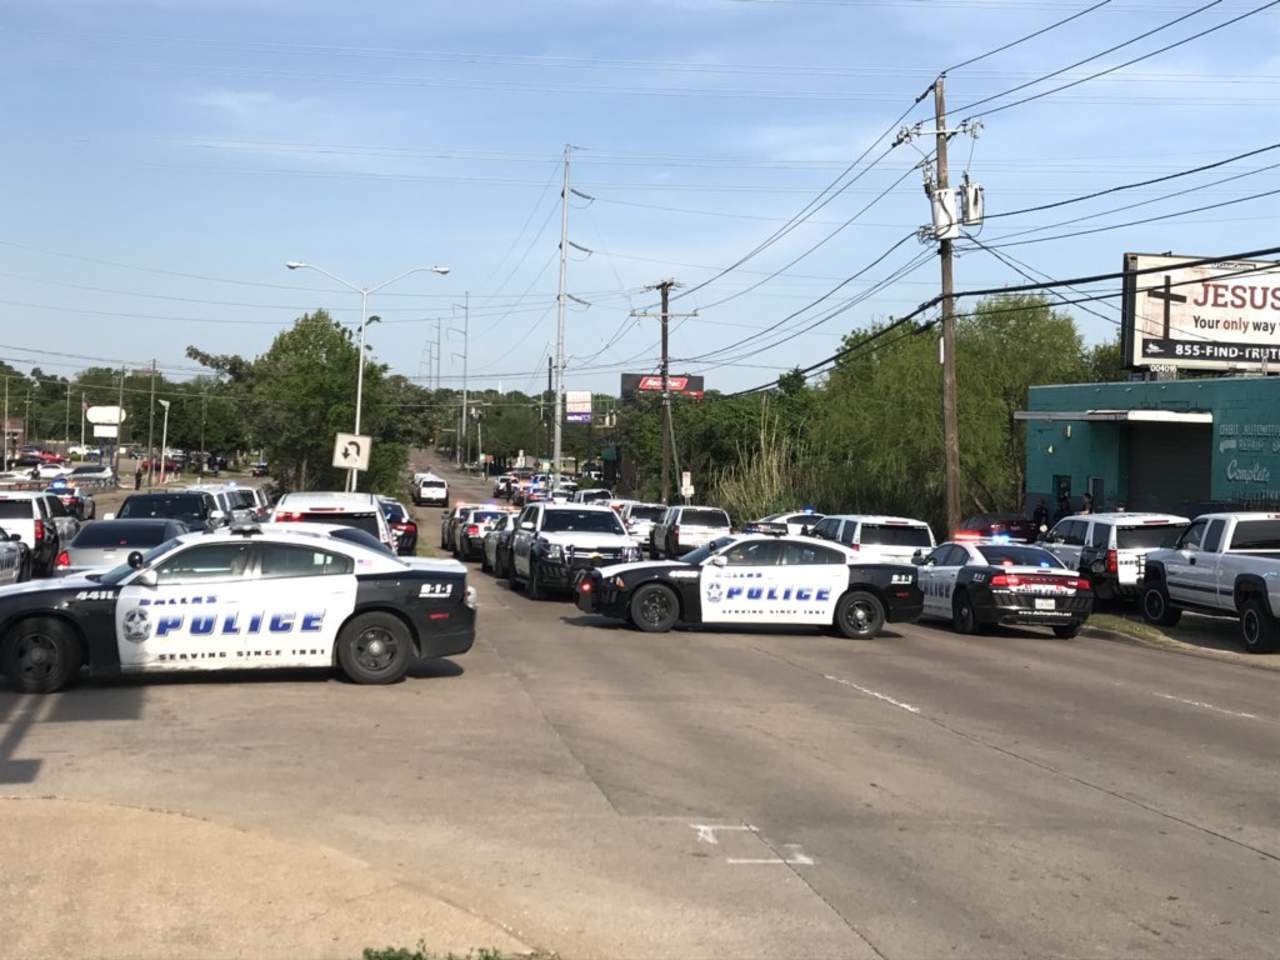 Un vocero del Departamento de Policía de Dallas confirmó un 'incidente importante' en la tienda y dijo que todavía es una 'escena muy activa'. Los hechos se registraron alrededor de las 16:00 horas locales (22:00 GMT). (ARCHIVO)